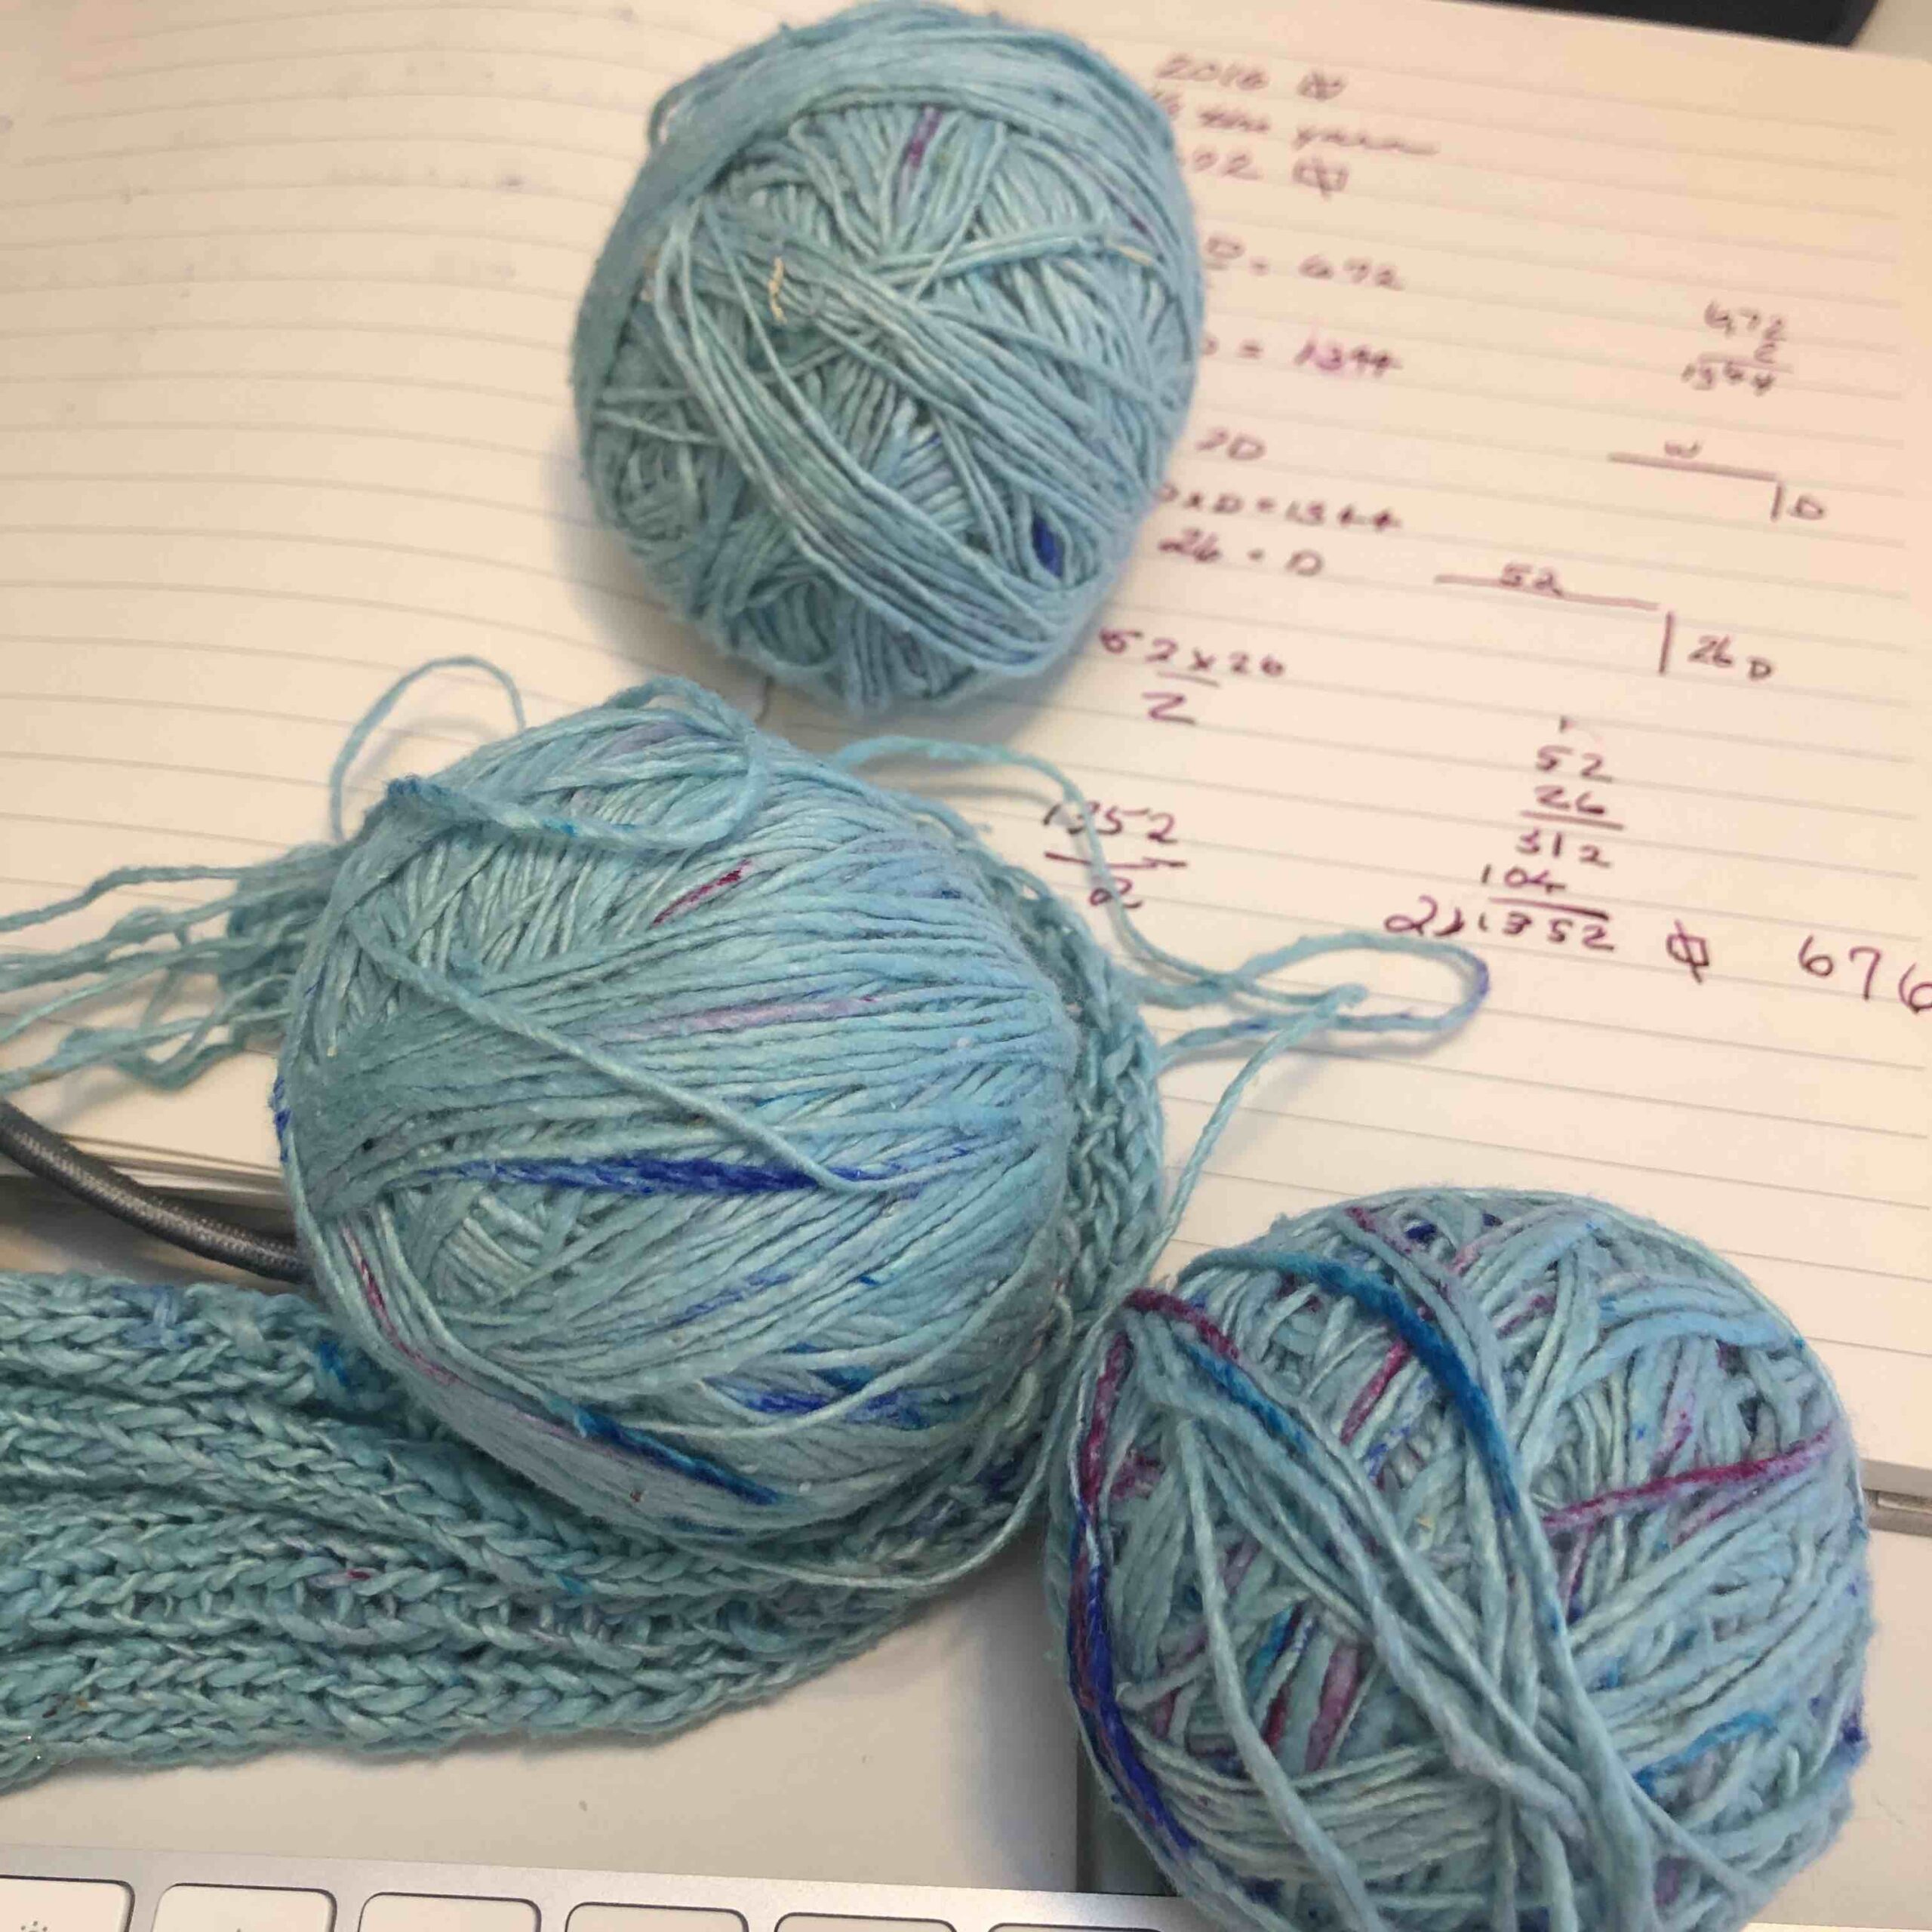 three balls of yarn for shawl math